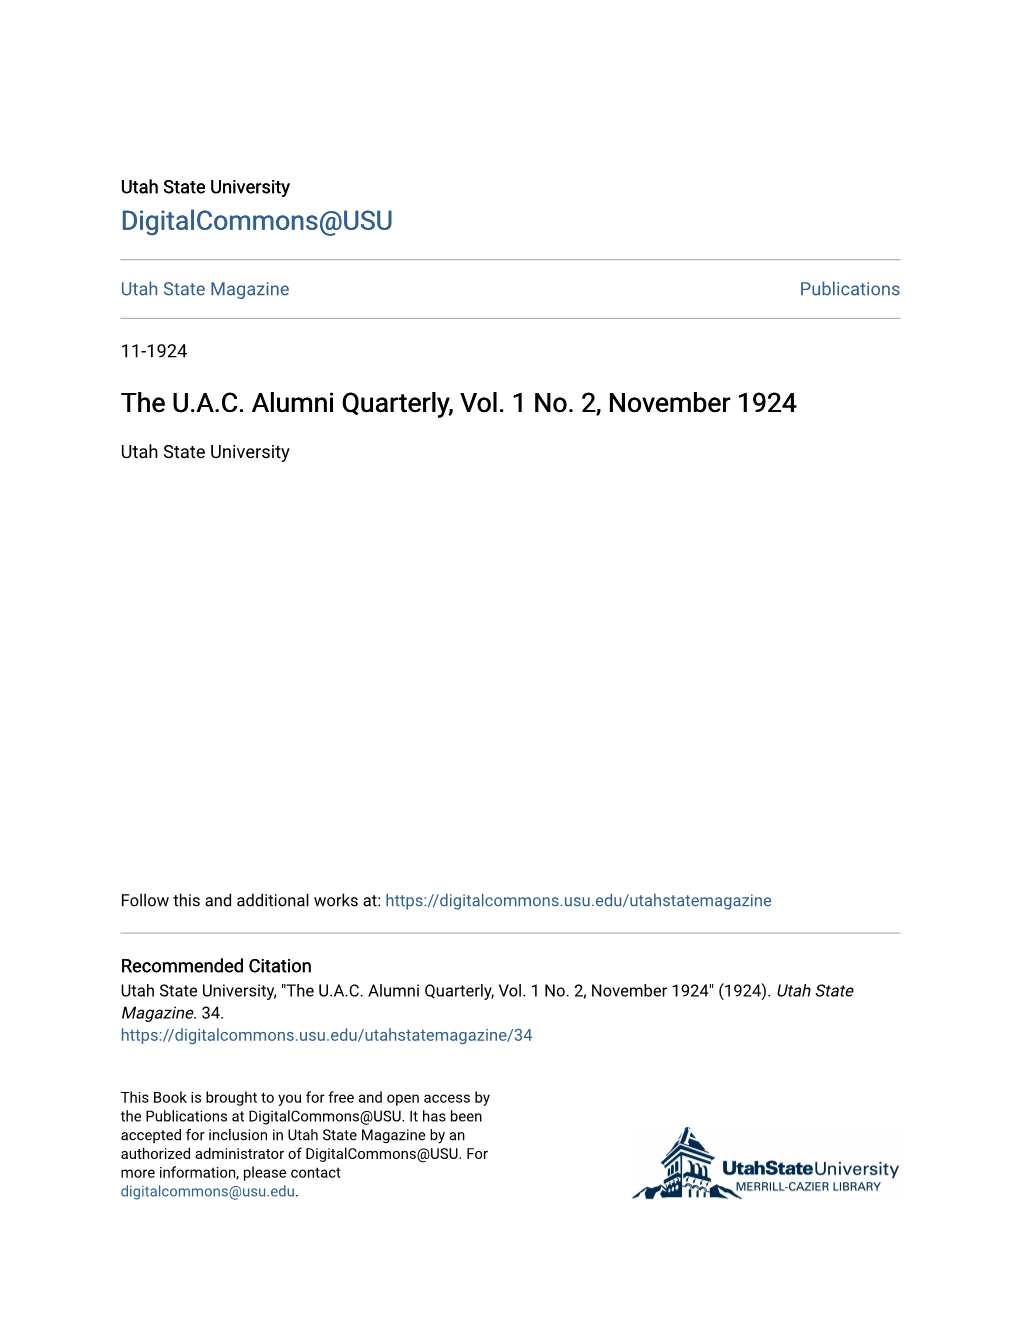 The U.A.C. Alumni Quarterly, Vol. 1 No. 2, November 1924